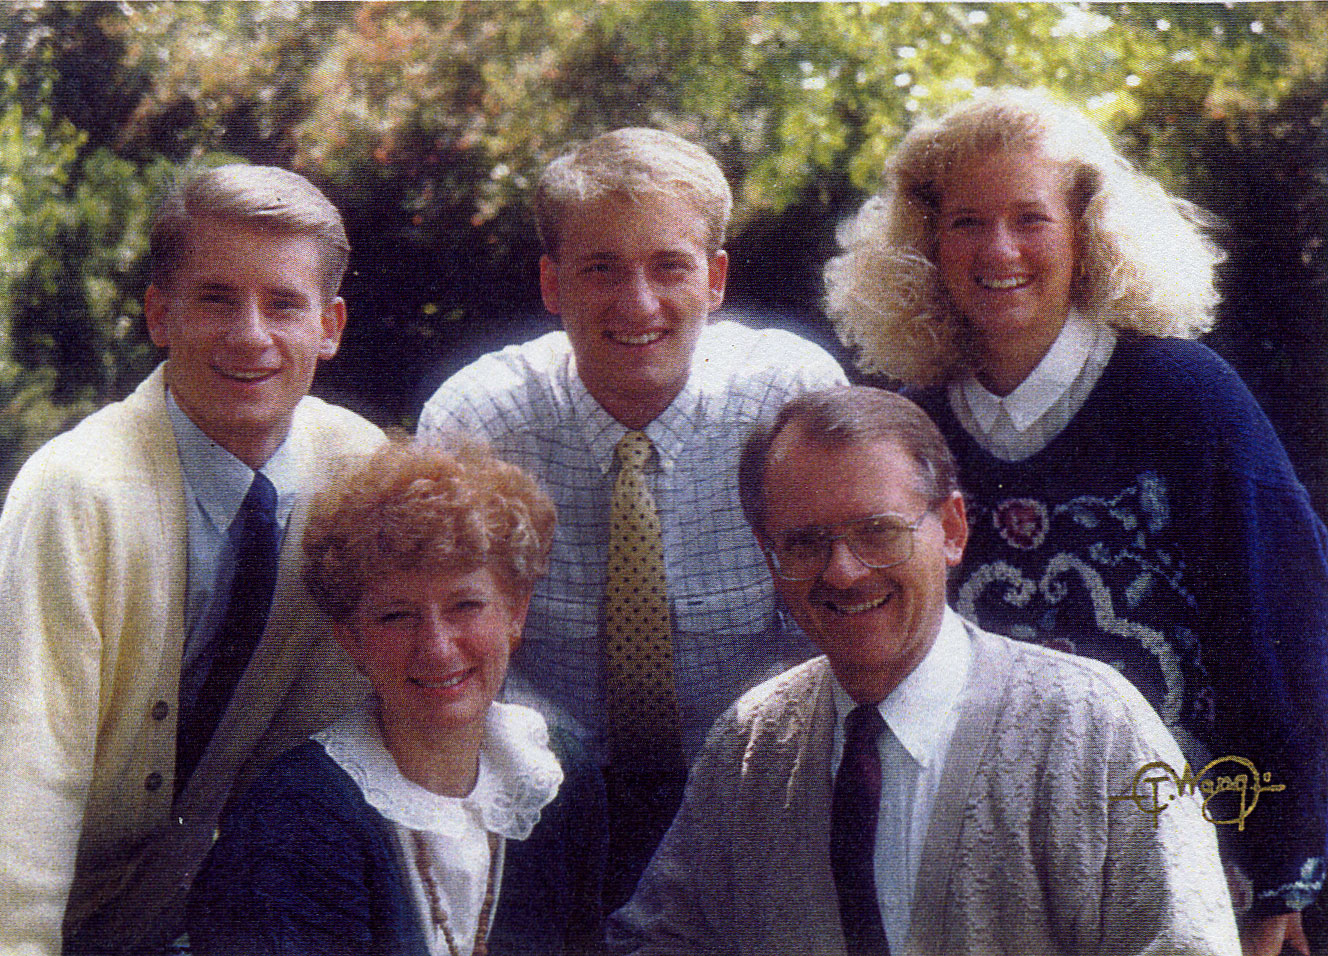 LaVonne's family